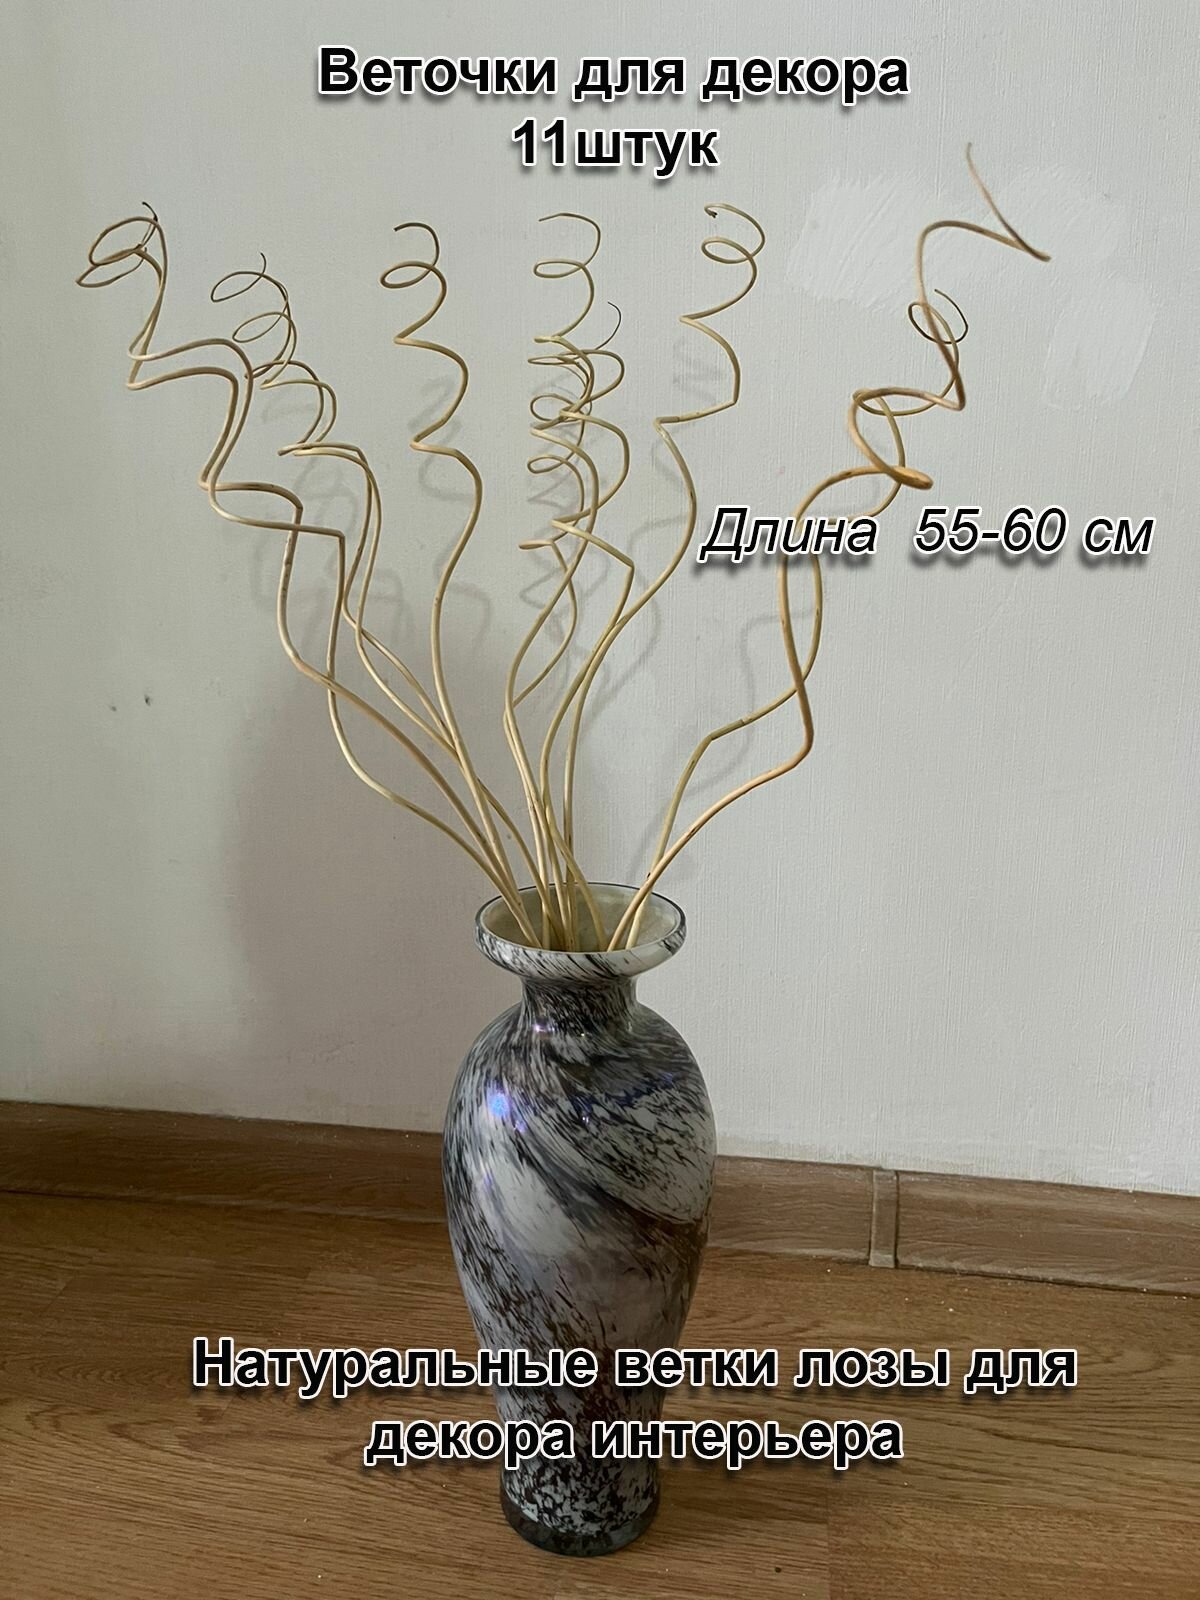 Интерьерные веточки - сухоцветы для декора интерьера в вазу